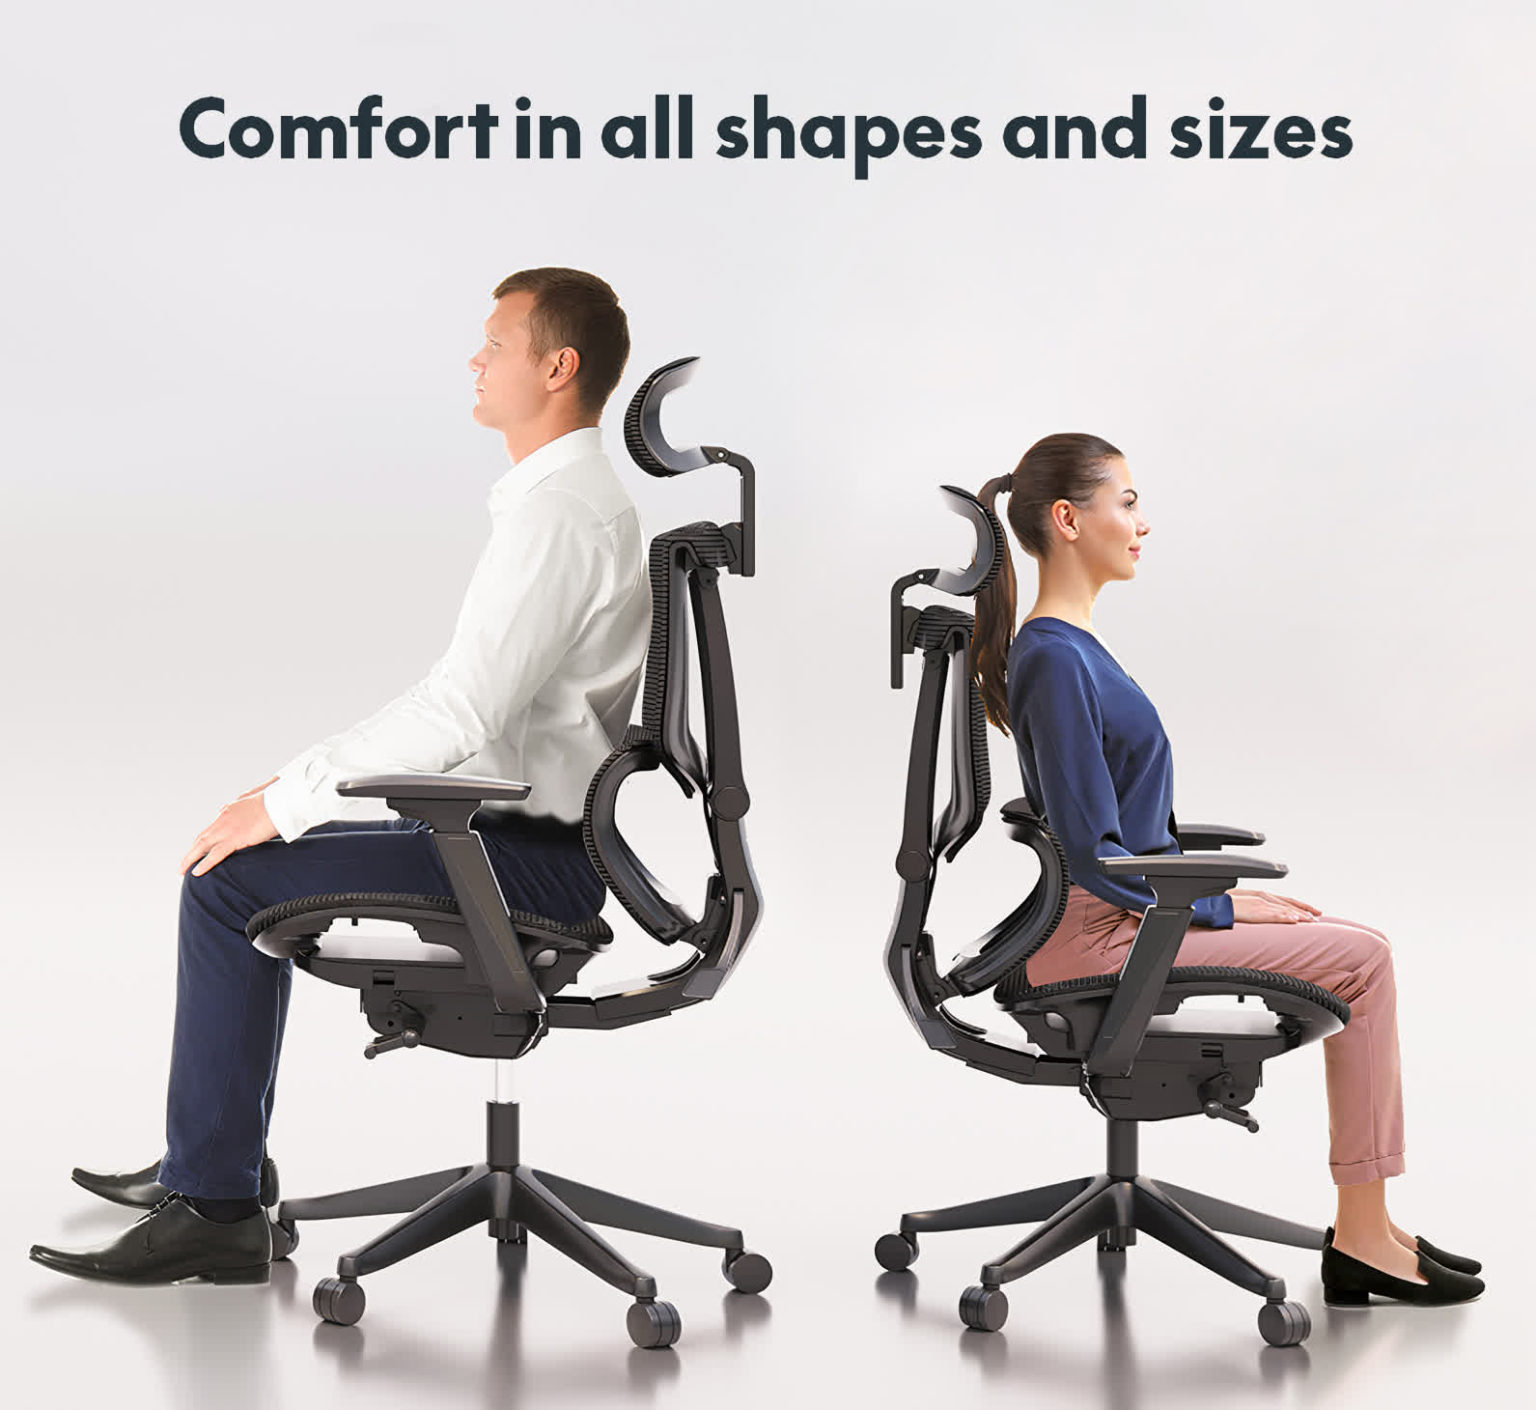 Chaise de bureau ergonomique réglable entrée de gamme Ideo 4D